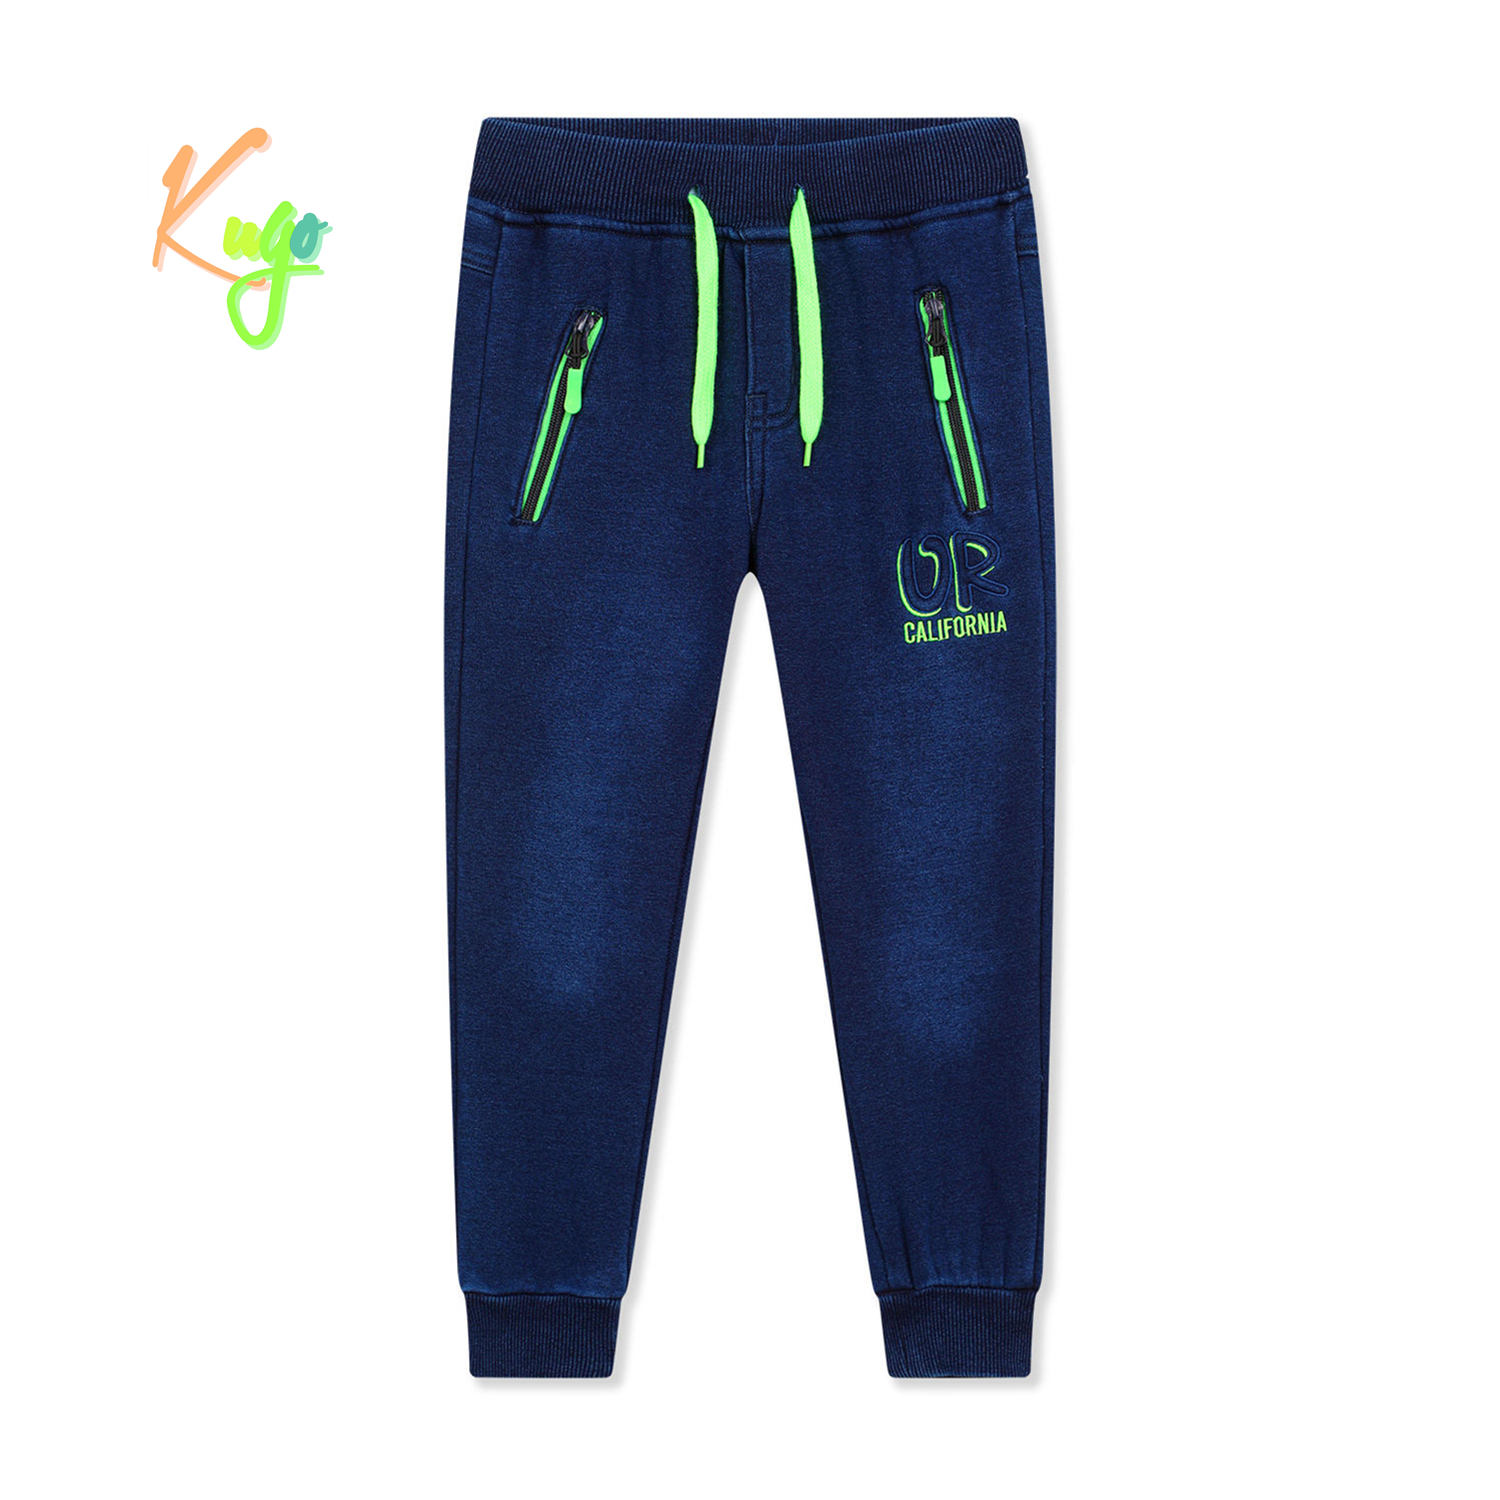 Chlapecké riflové kalhoty/ tepláky, zateplené - KUGO FK0317, modrá Barva: Modrá, Velikost: 146